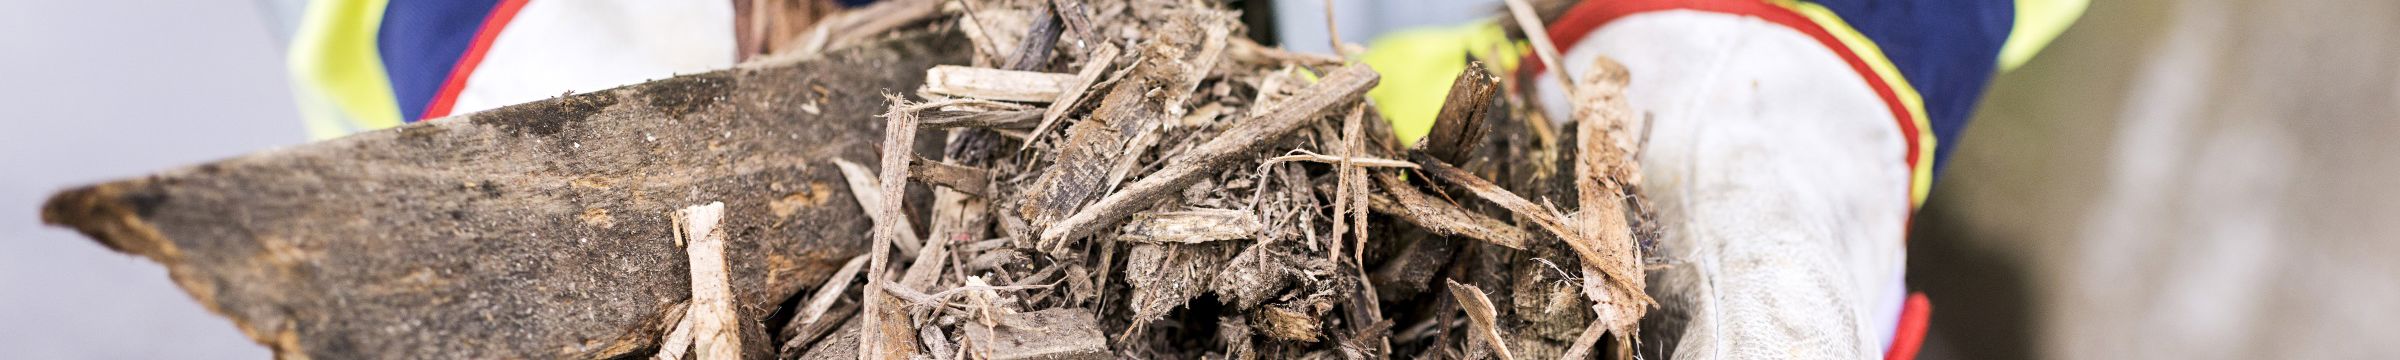 Biomasse i form av gammelt trevirke